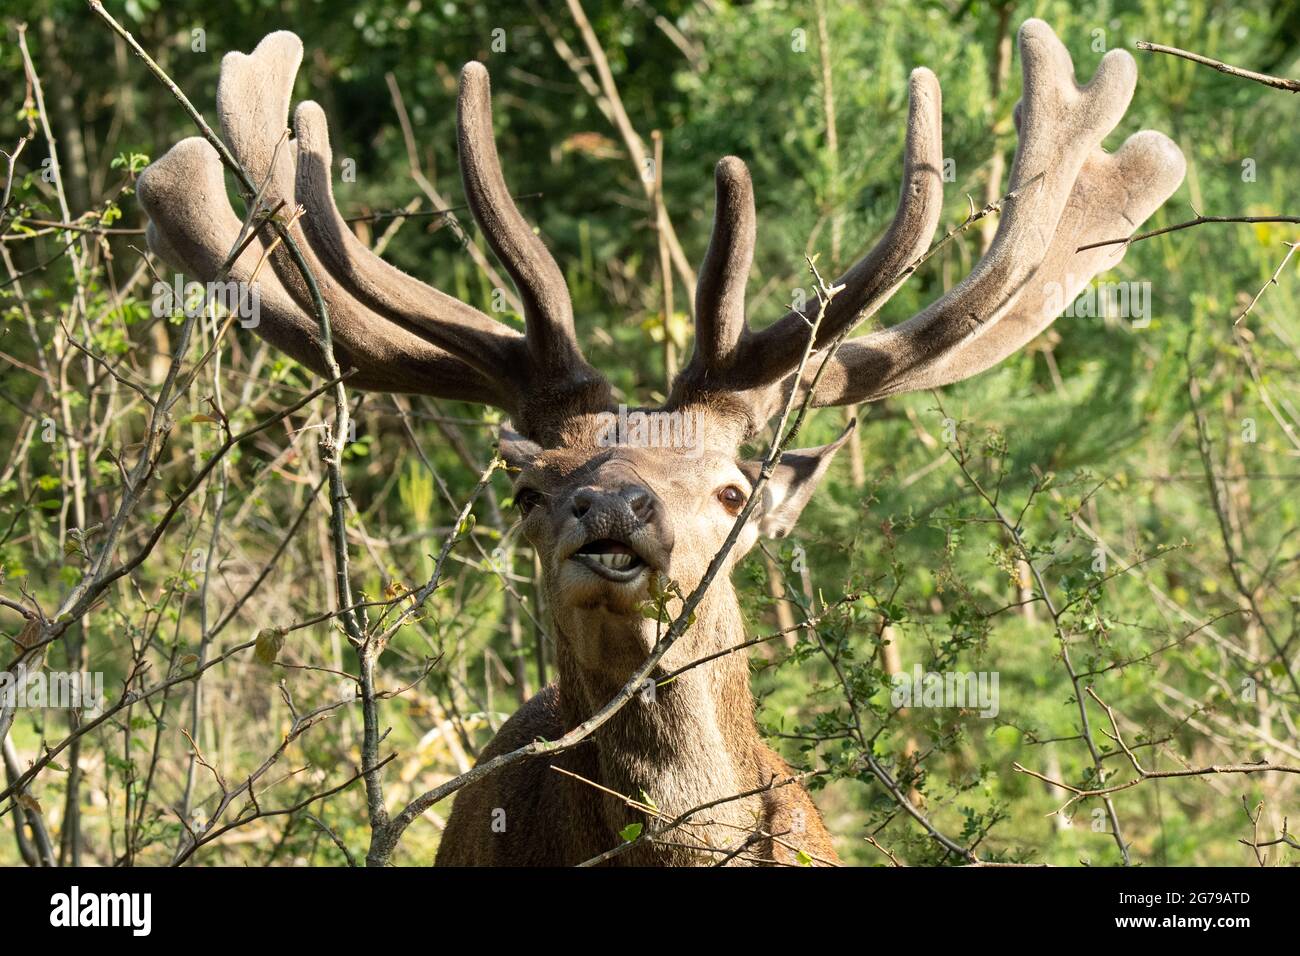 Deer, grazing Stock Photo